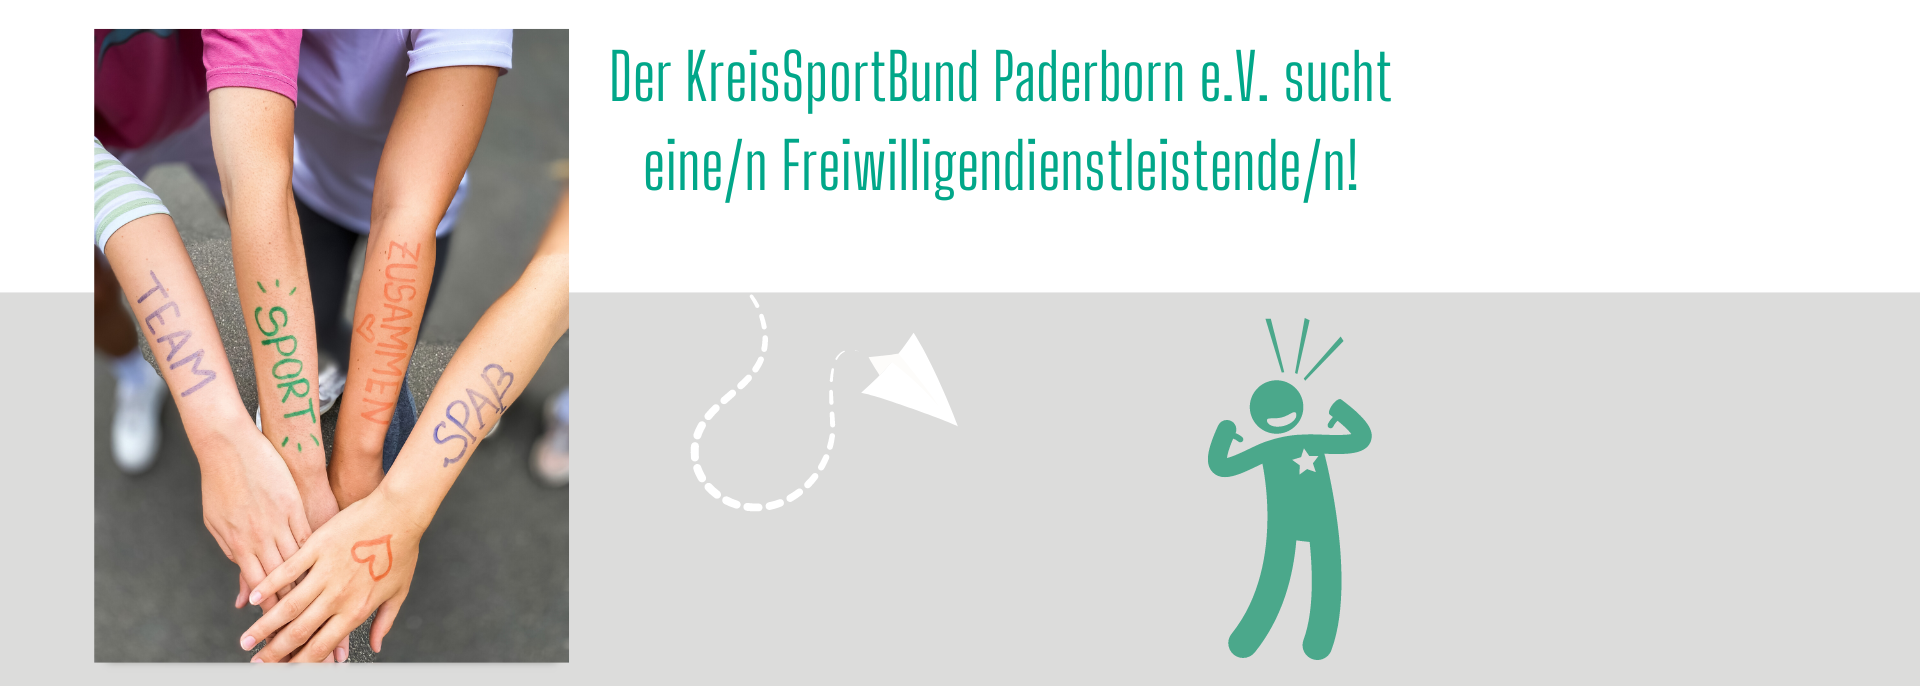 KreisSportBund Paderborn e.V.